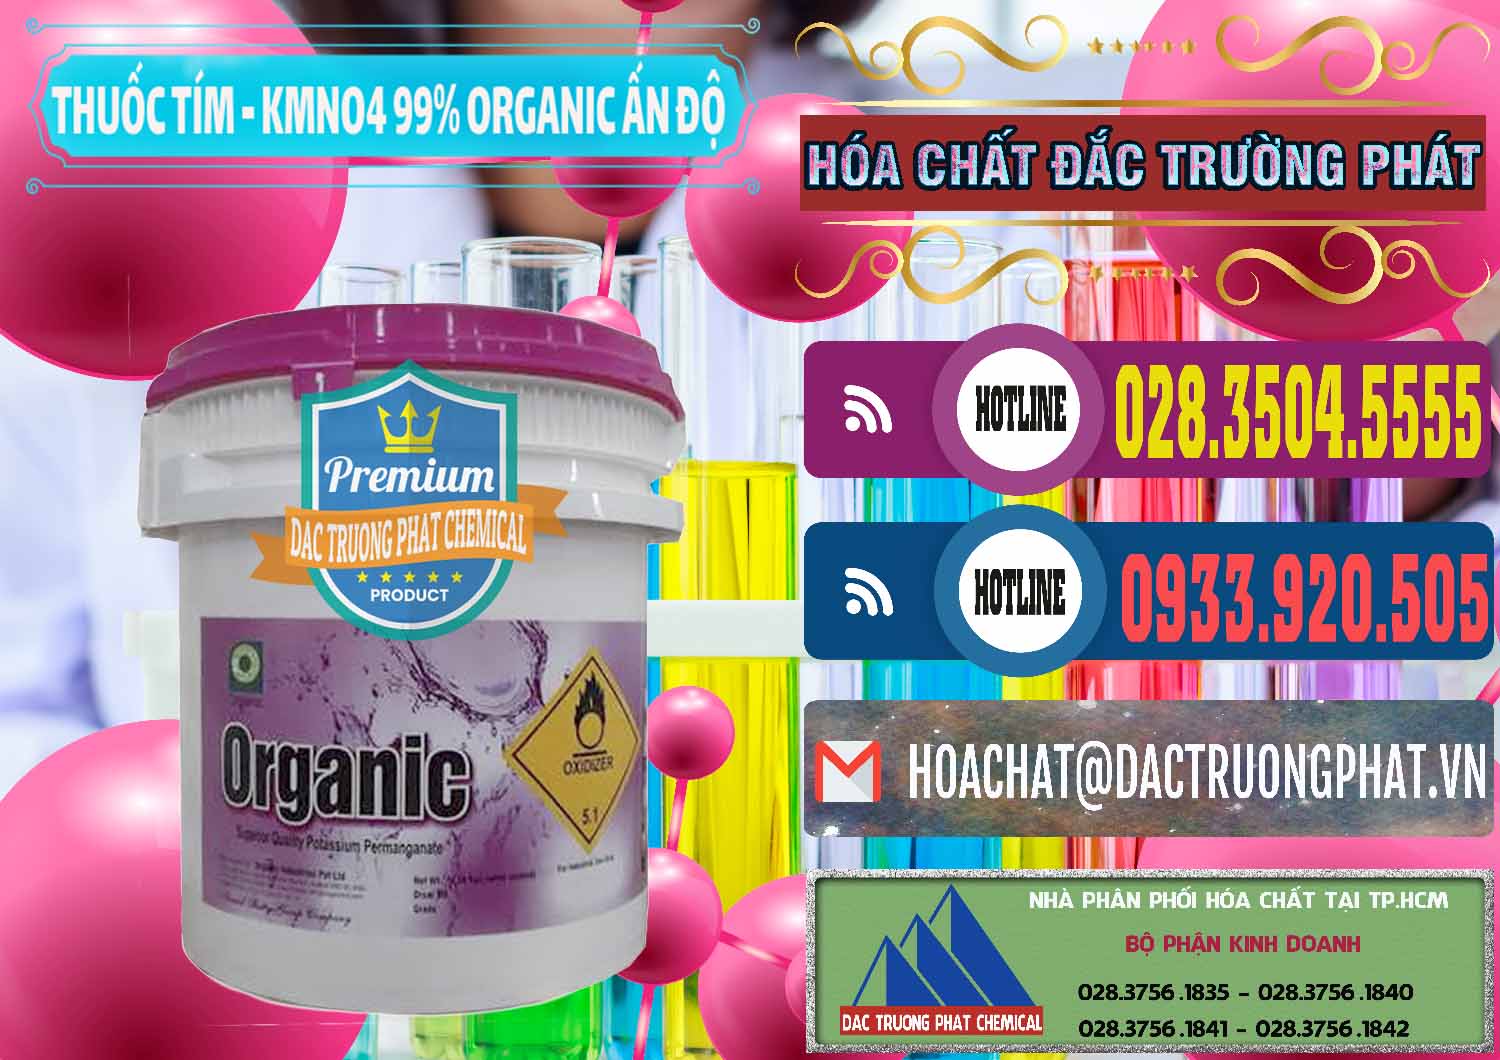 Công ty chuyên kinh doanh & bán Thuốc Tím - KMNO4 99% Organic Ấn Độ India - 0216 - Nơi phân phối và bán hóa chất tại TP.HCM - muabanhoachat.com.vn